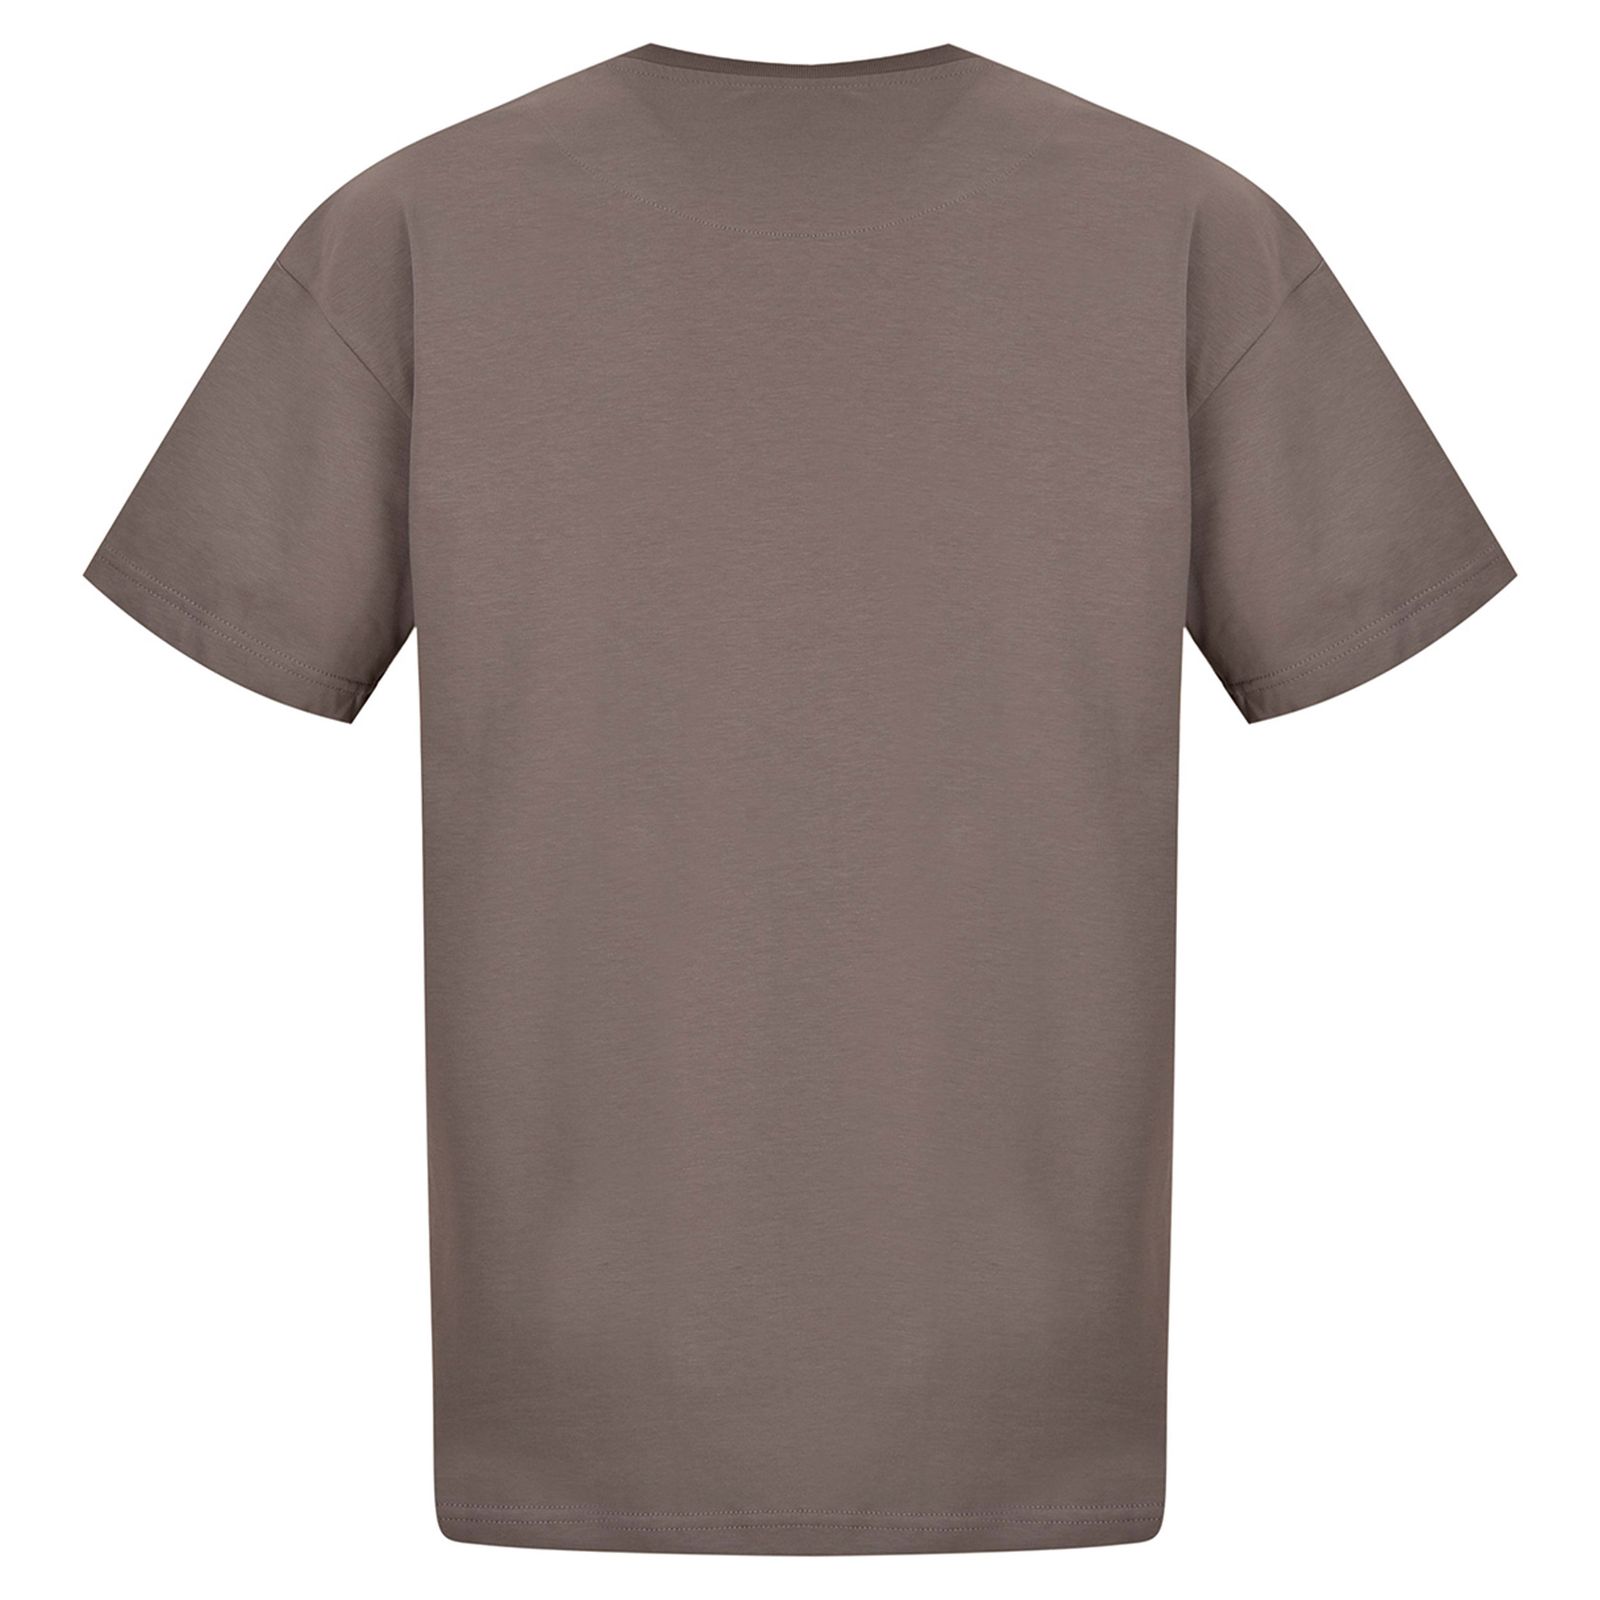 تی شرت آستین کوتاه مردانه بادی اسپینر مدل 3484 کد 1 رنگ طوسي -  - 2